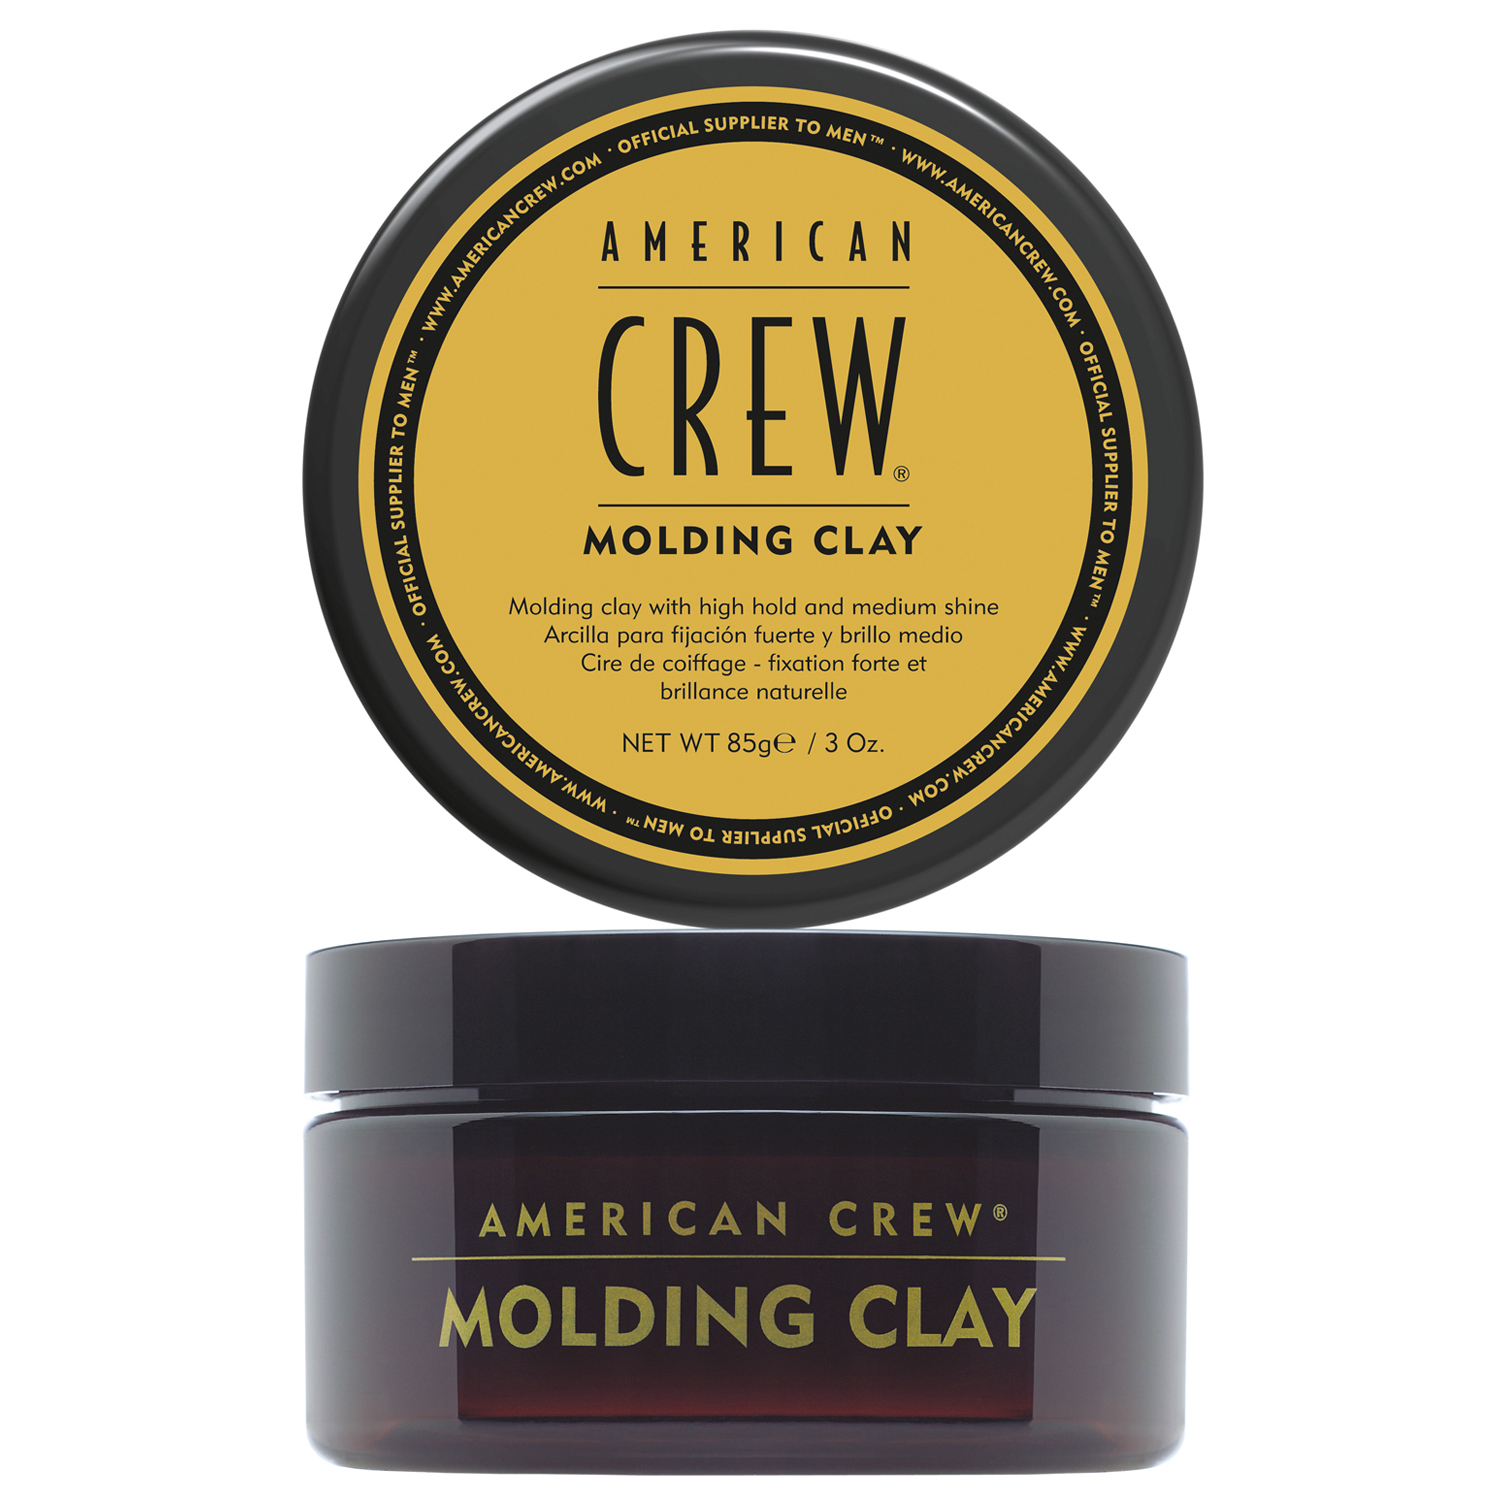 American Crew Моделирующая глина для укладки волос сильной фиксации Molding Clay, 85 г (American Crew, Styling) глина для укладки волос american crew matte clay 85 г